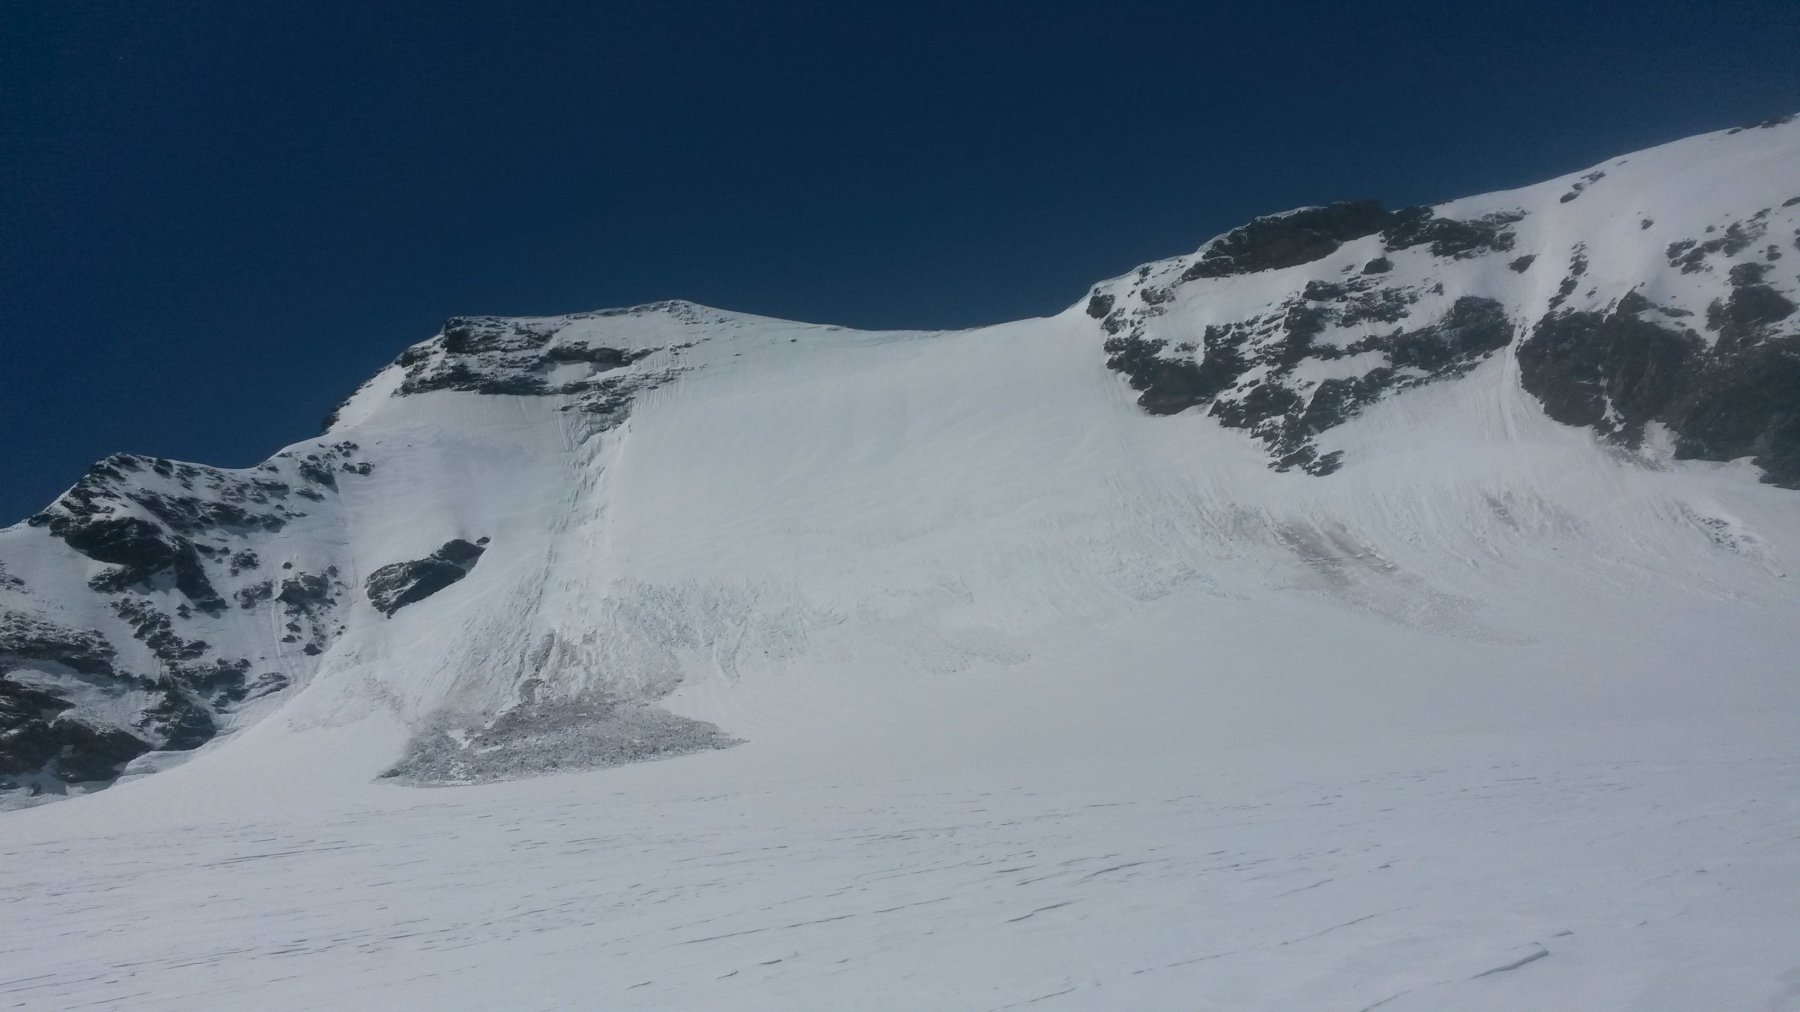 Scollinato il Col d'Oin, si attraversa il ghiacciaio proprio davanti alla Nord della Grande Aiguille Rousse